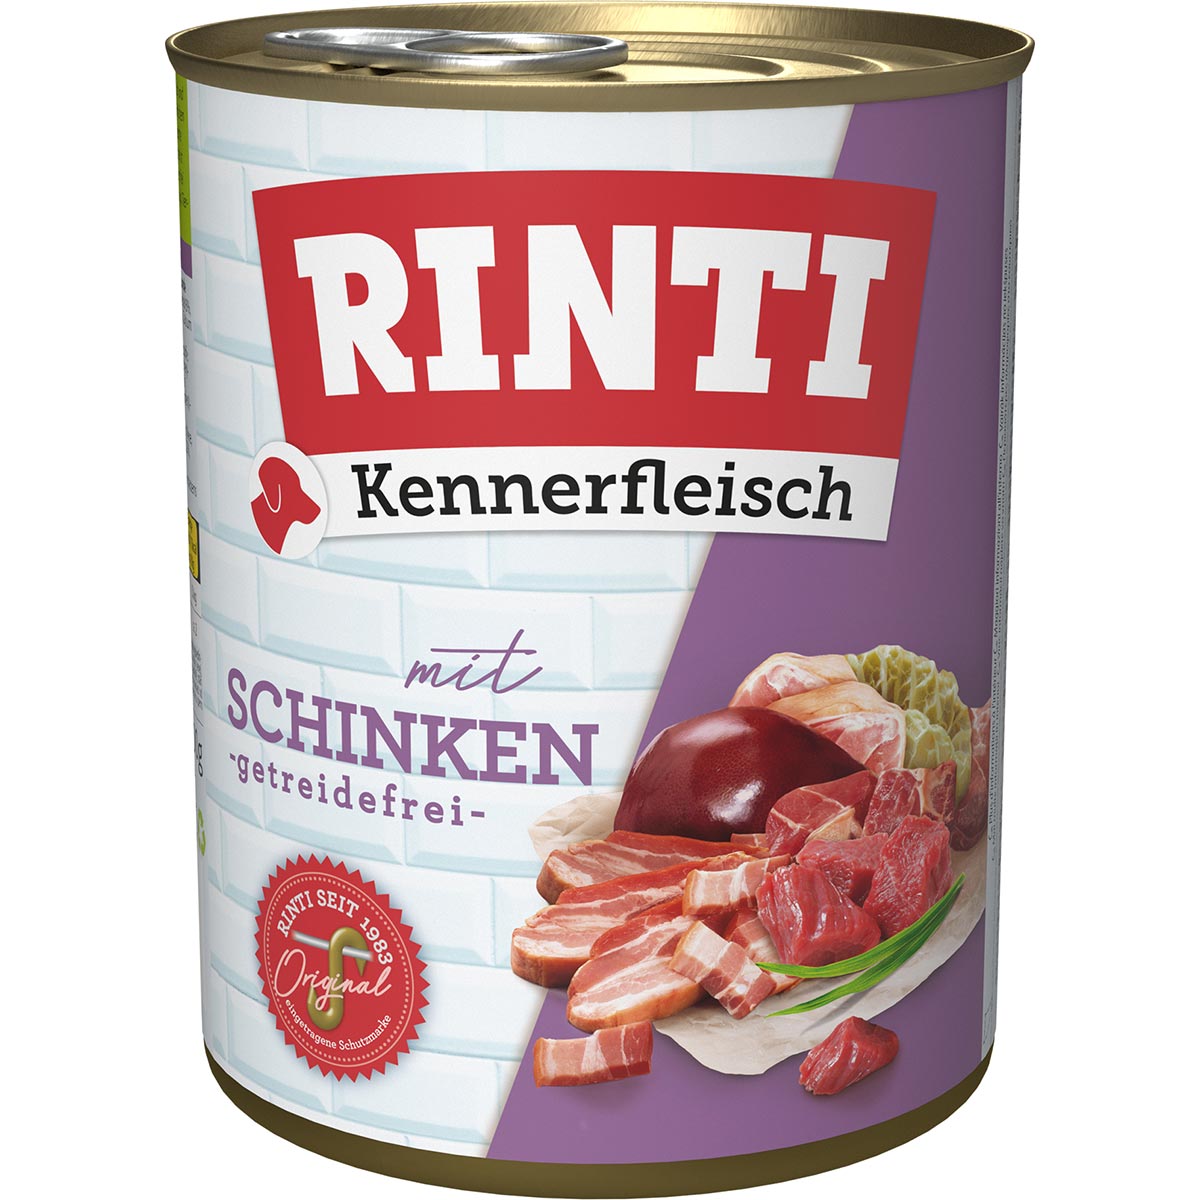 Rinti Kennerfleisch Schinken 12x800g von Rinti